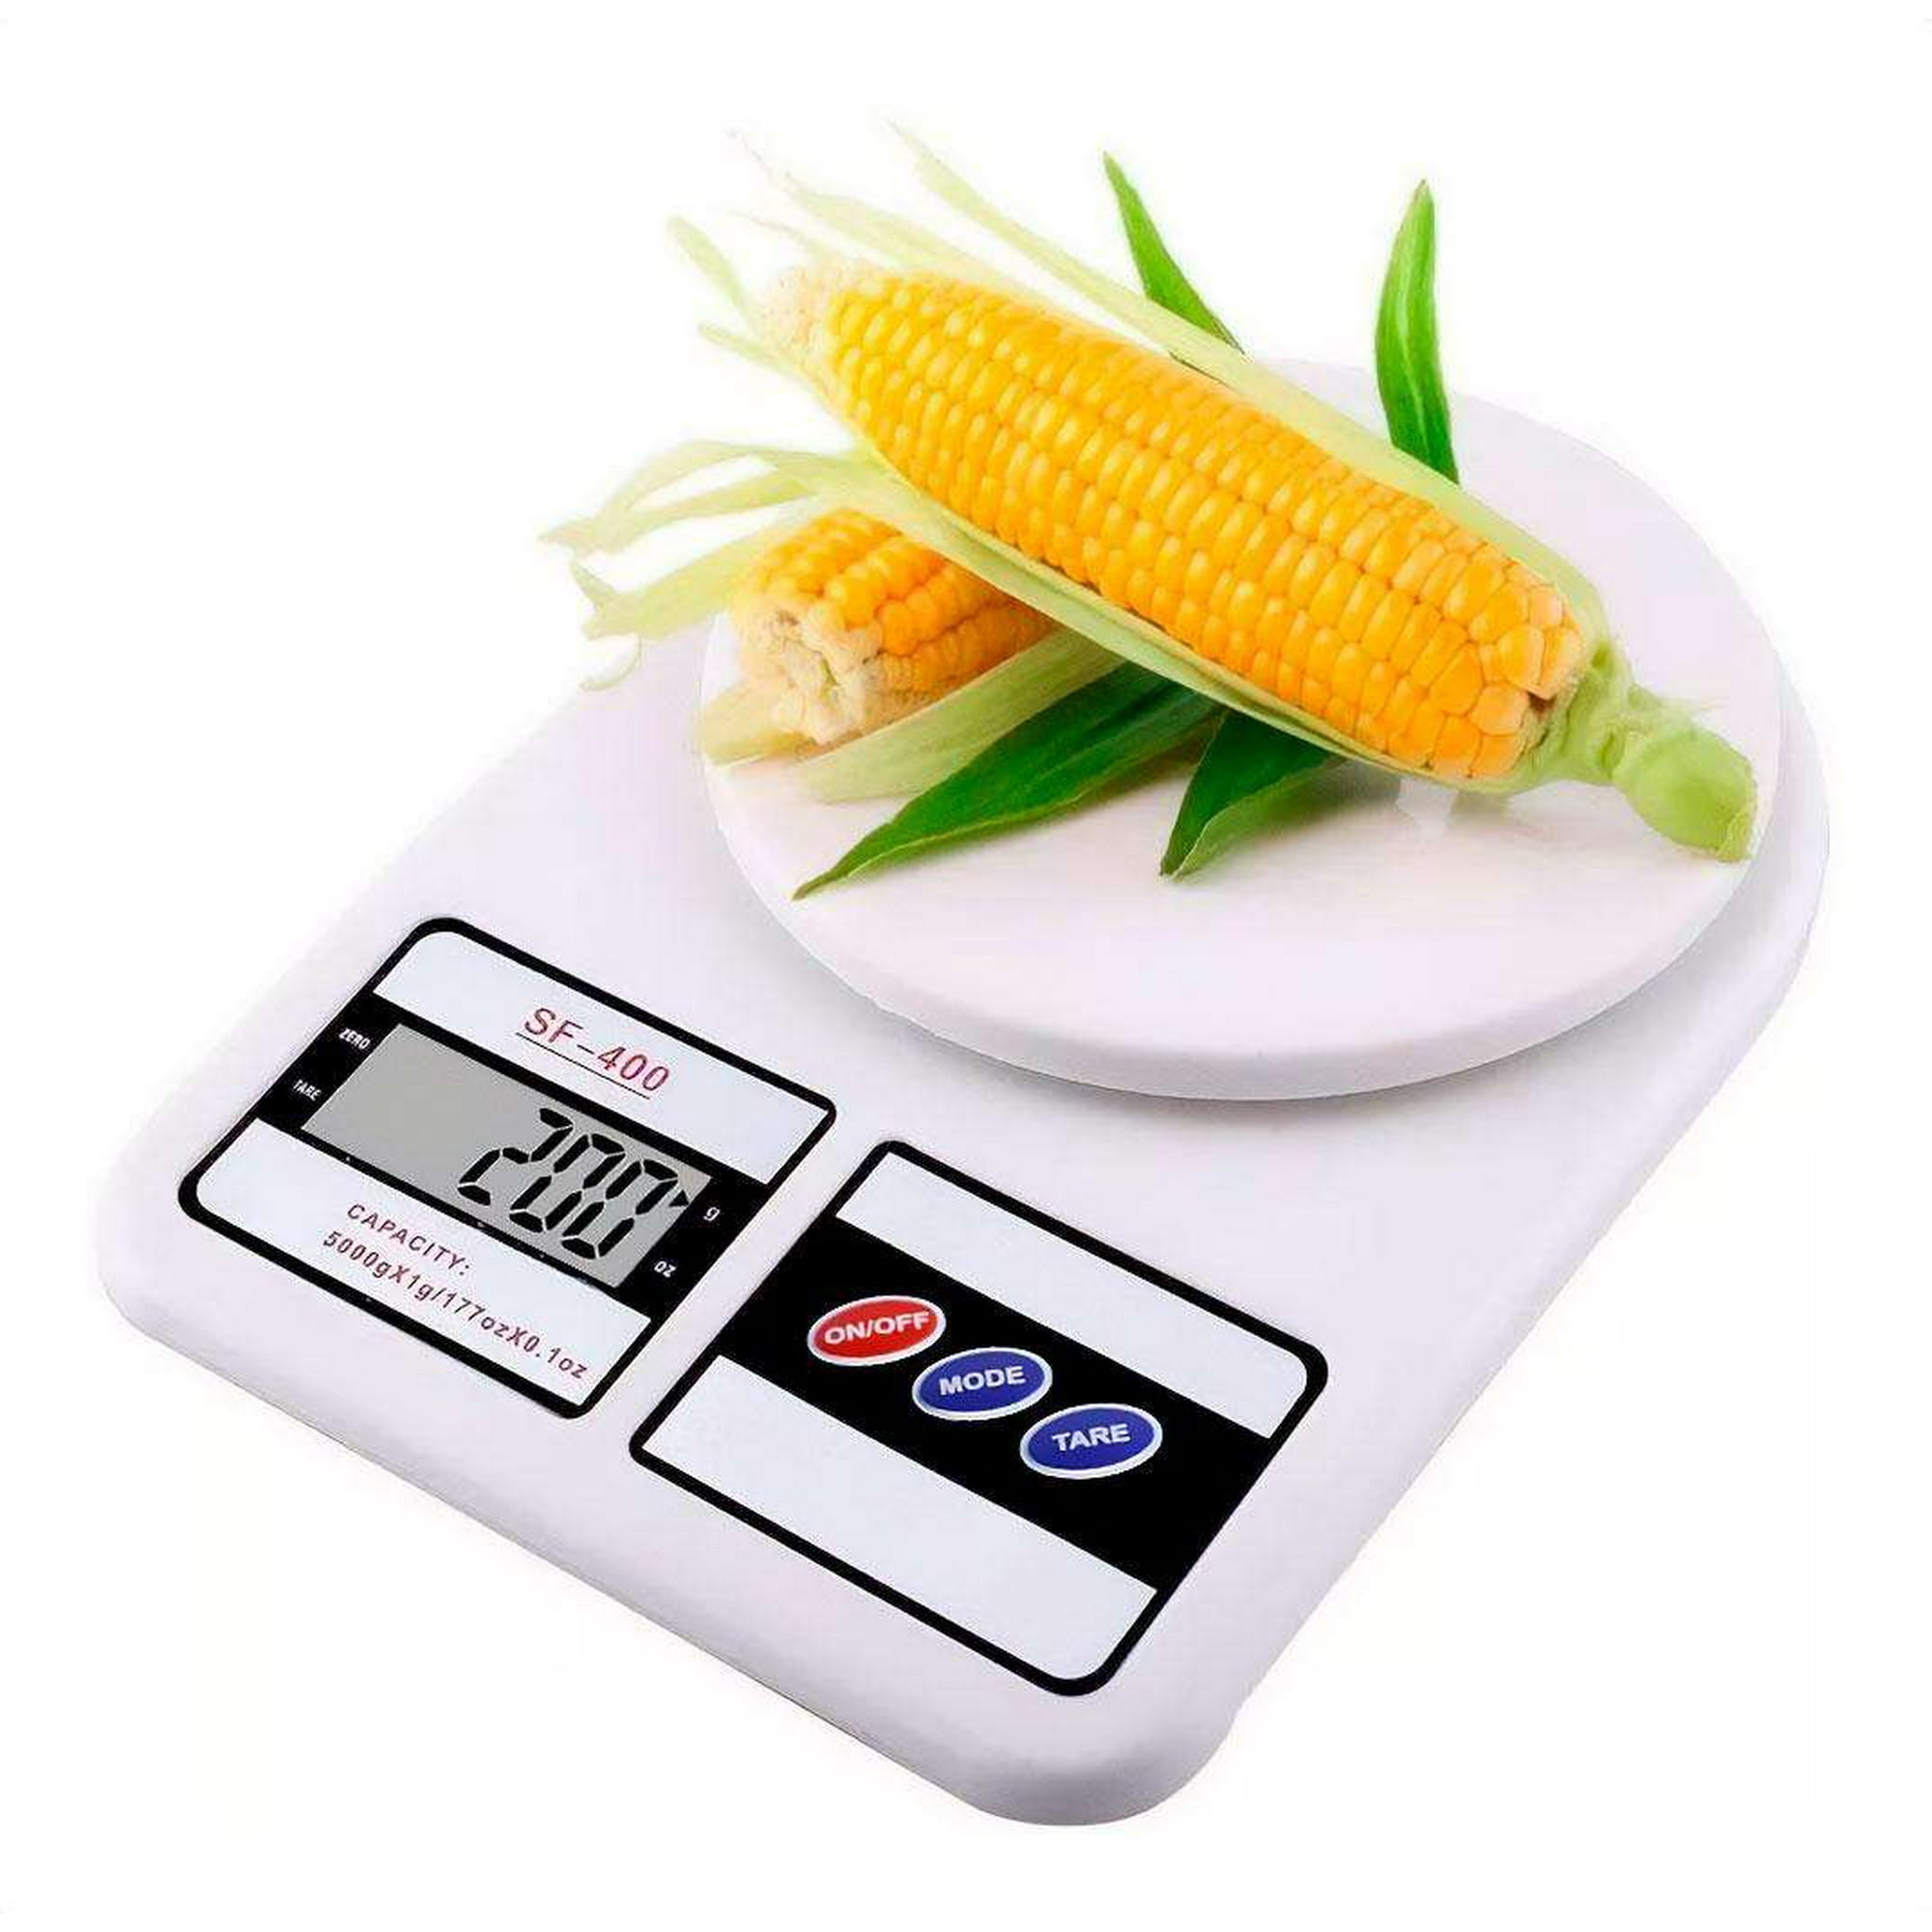 Pesa Digital Balanza de Cocina de 1gr a 5000grs (5 kilos) Gen